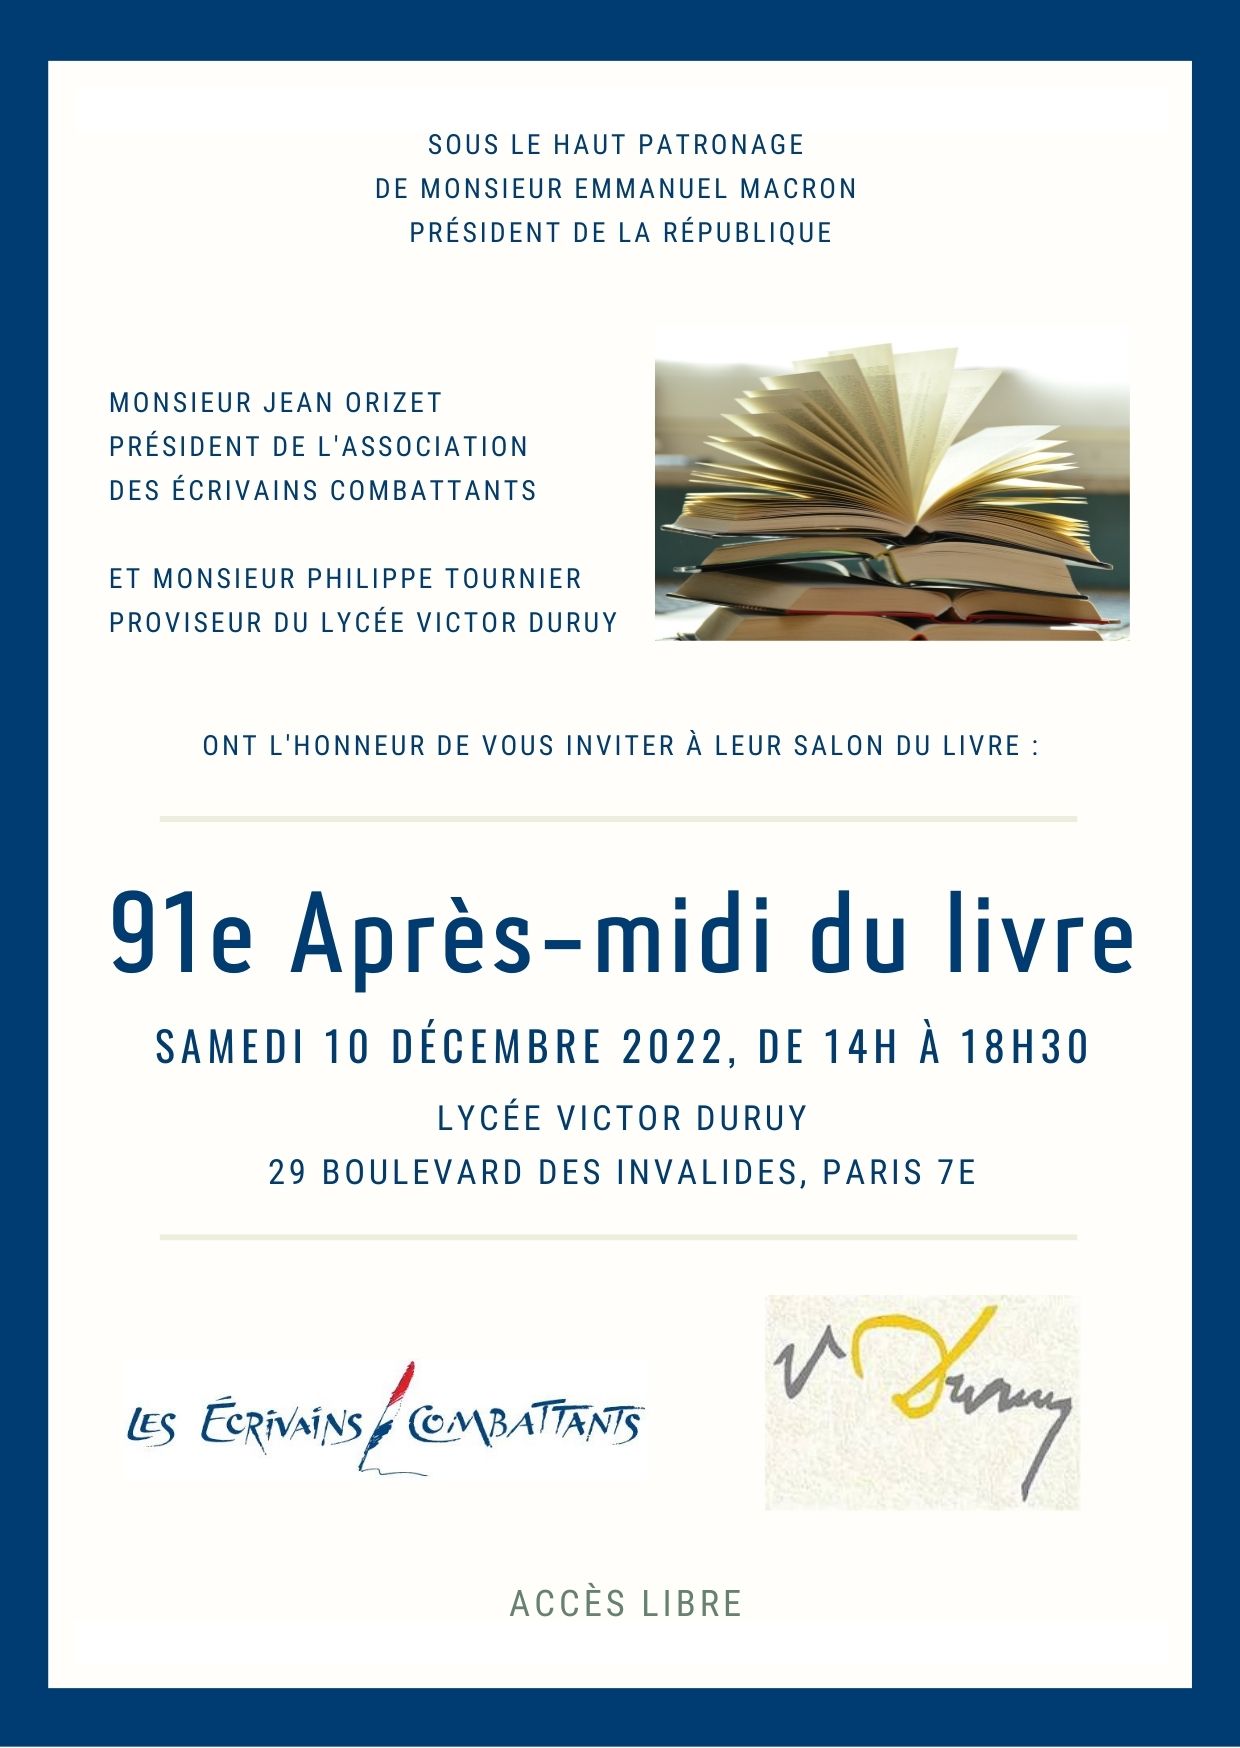 PARIS 10 Decembre 2022 : 91eme Apres Midi du Livre - Association des Ecrivains Combattants